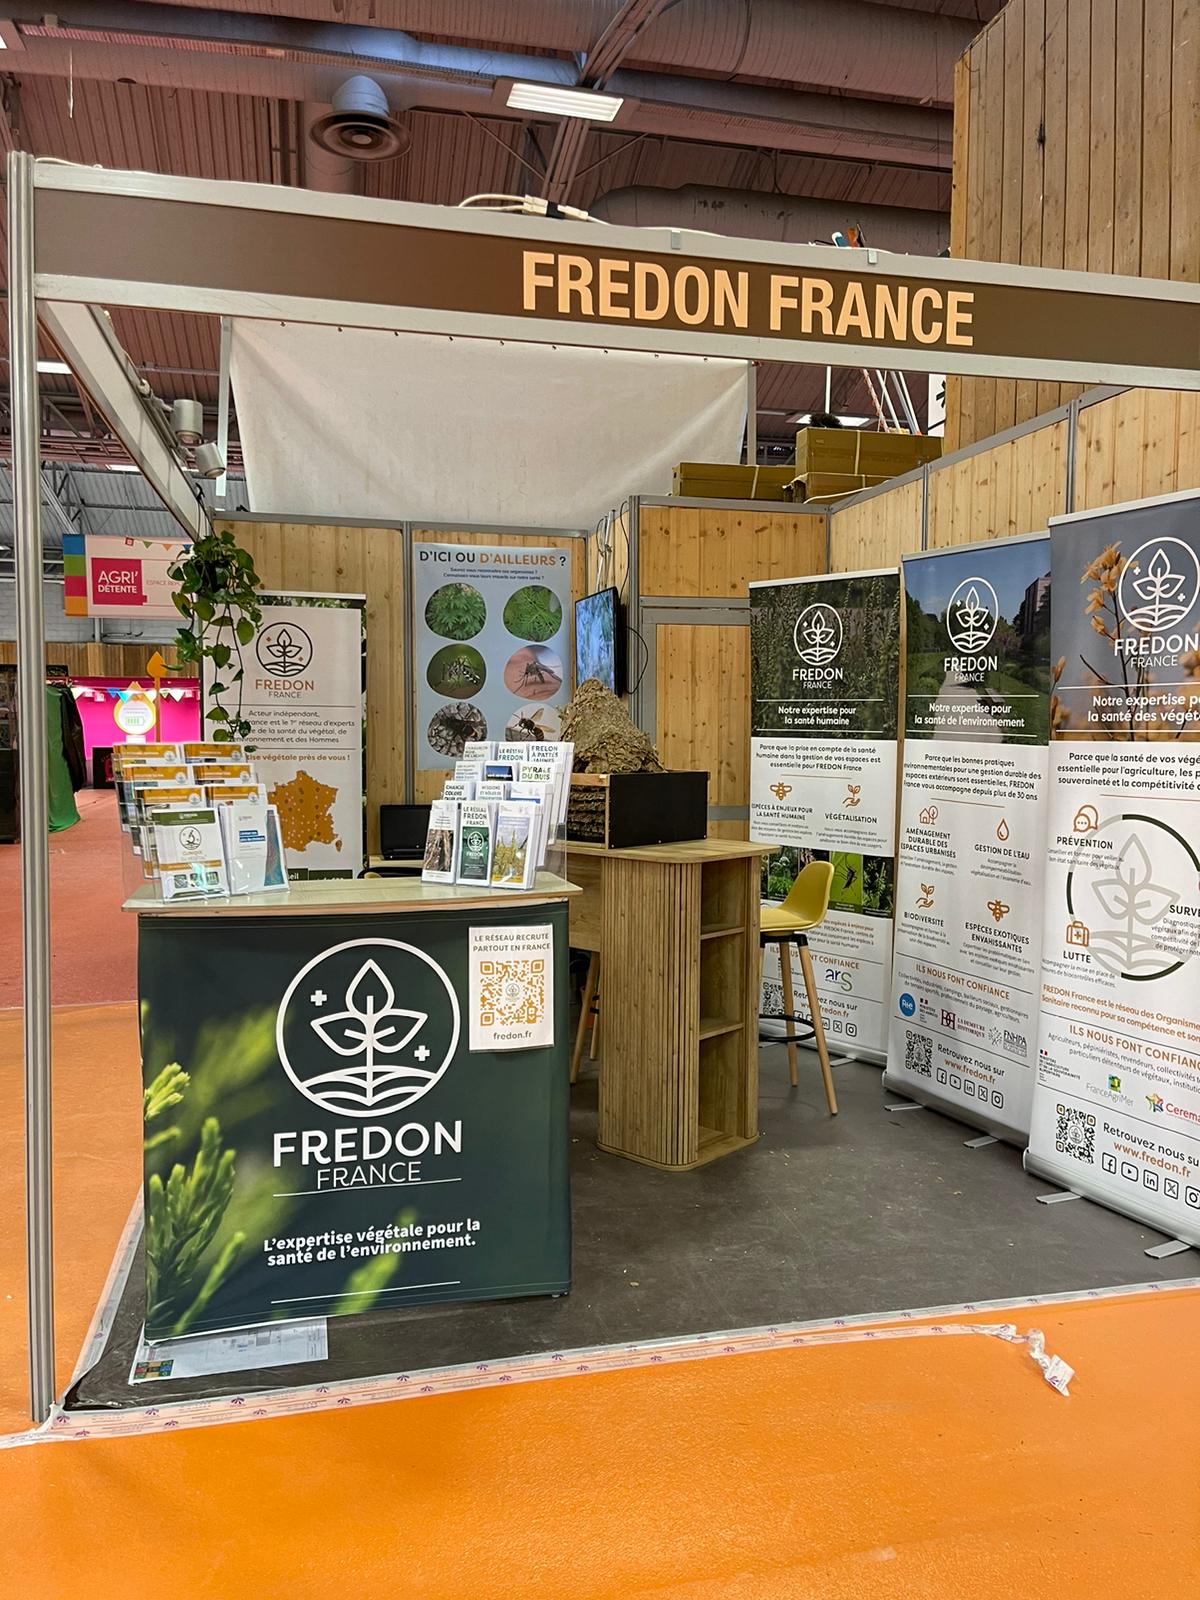 "FREDON france nouvelle aquitaine salon agriculture paris"